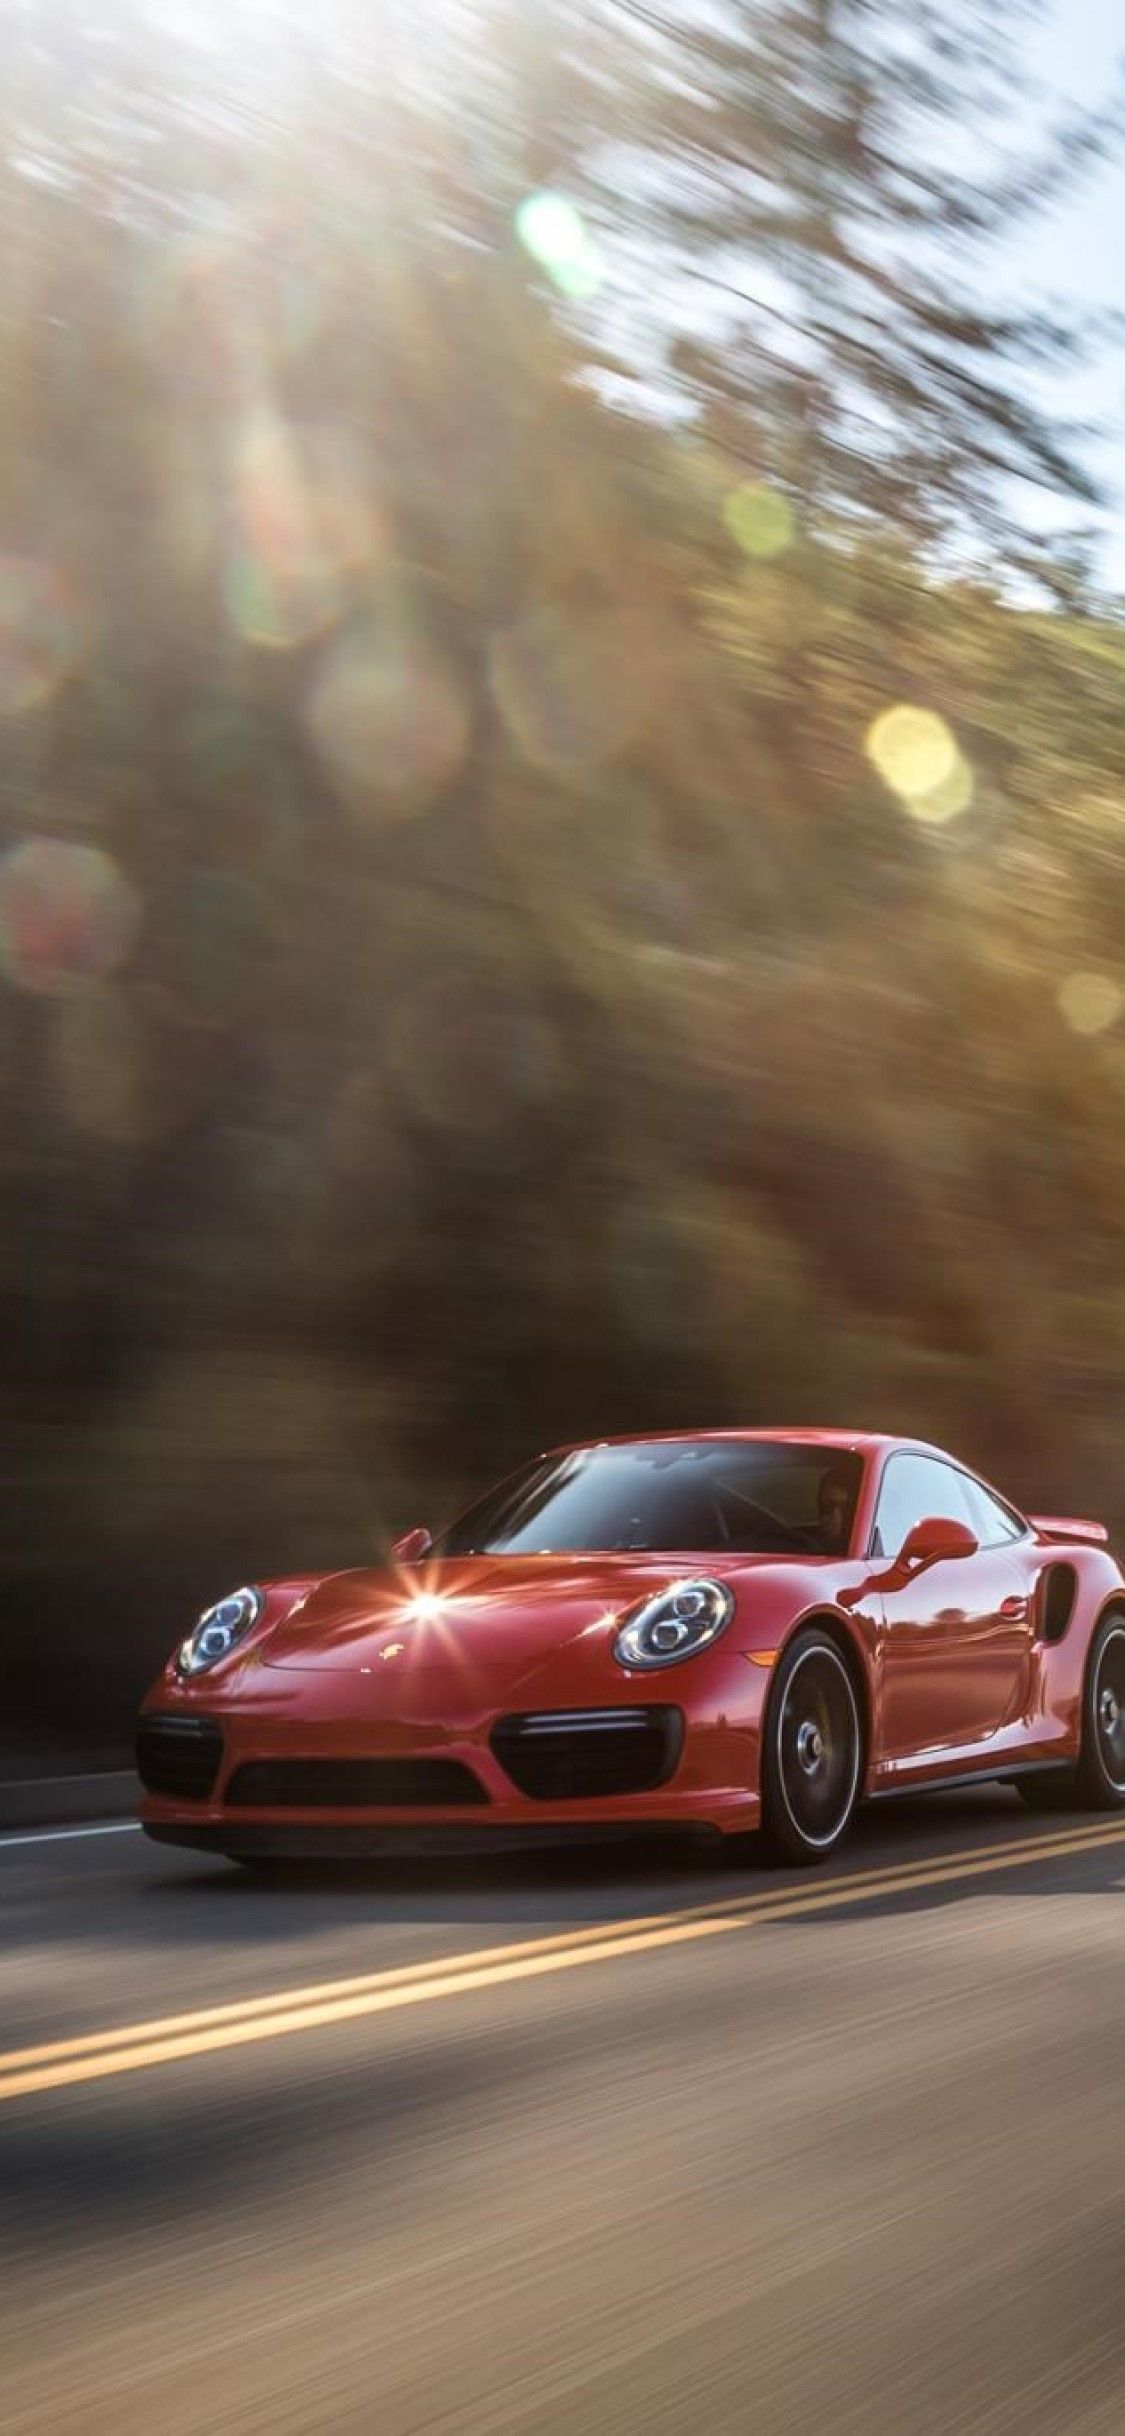 Bạn đang tìm kiếm một bức ảnh nền iPhone đẹp với chủ đề siêu xe? Porsche 911 Turbo S sẽ không khiến bạn thất vọng. Hãy tải ngay bức ảnh này để chiếc iPhone của bạn trở nên đẳng cấp hơn với thiết kế đầy tinh tế và sang trọng từ Porsche.